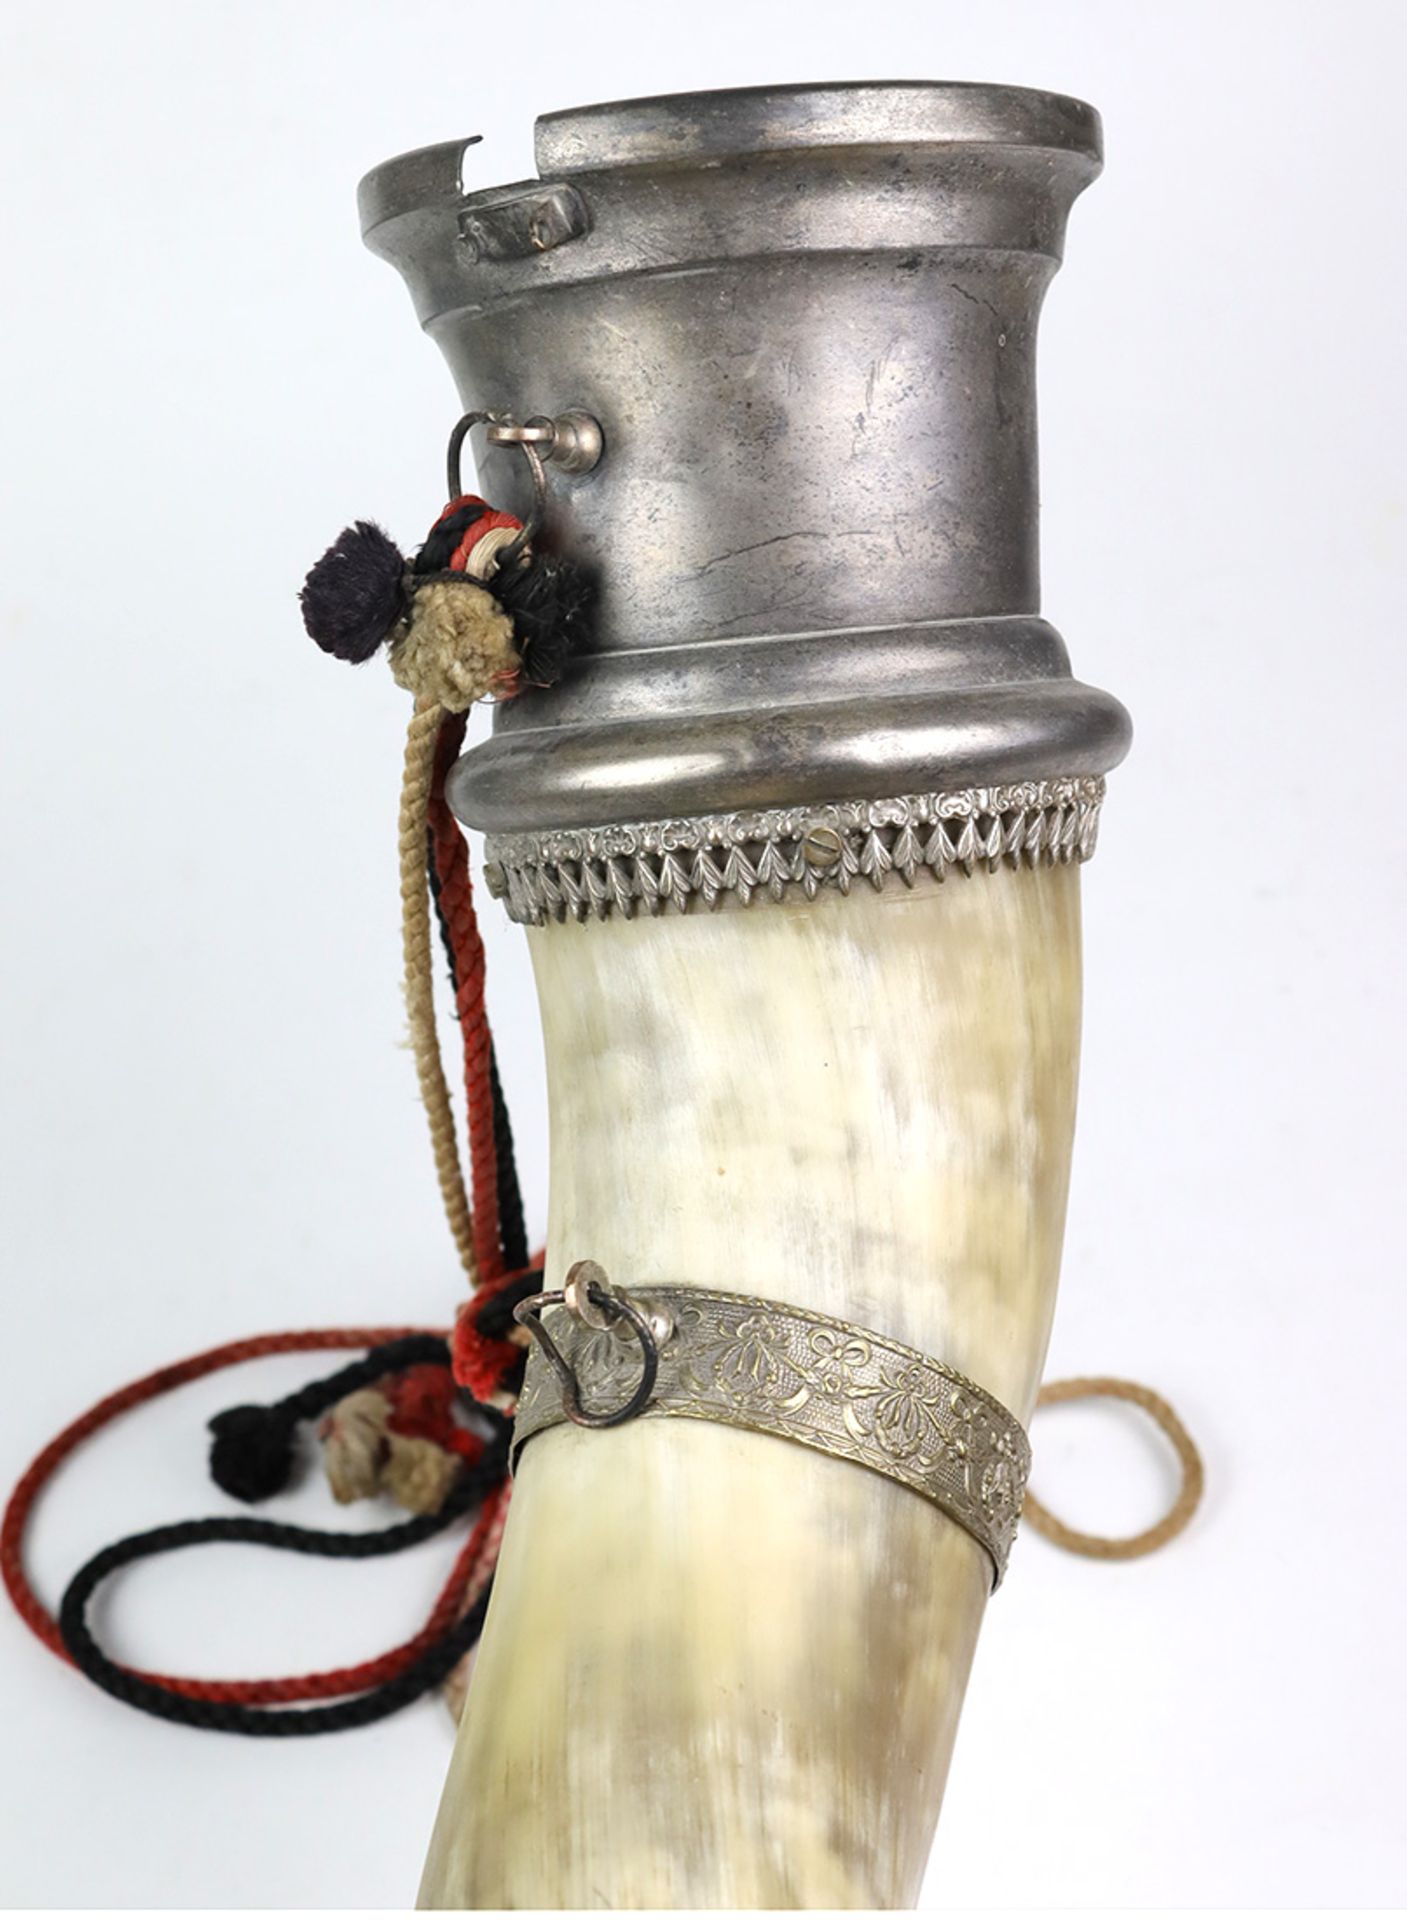 großes Trinkhorn um 1900natürlich geschwungene Form im Farbverlauf von blond bis brau irisierend, - Bild 3 aus 4